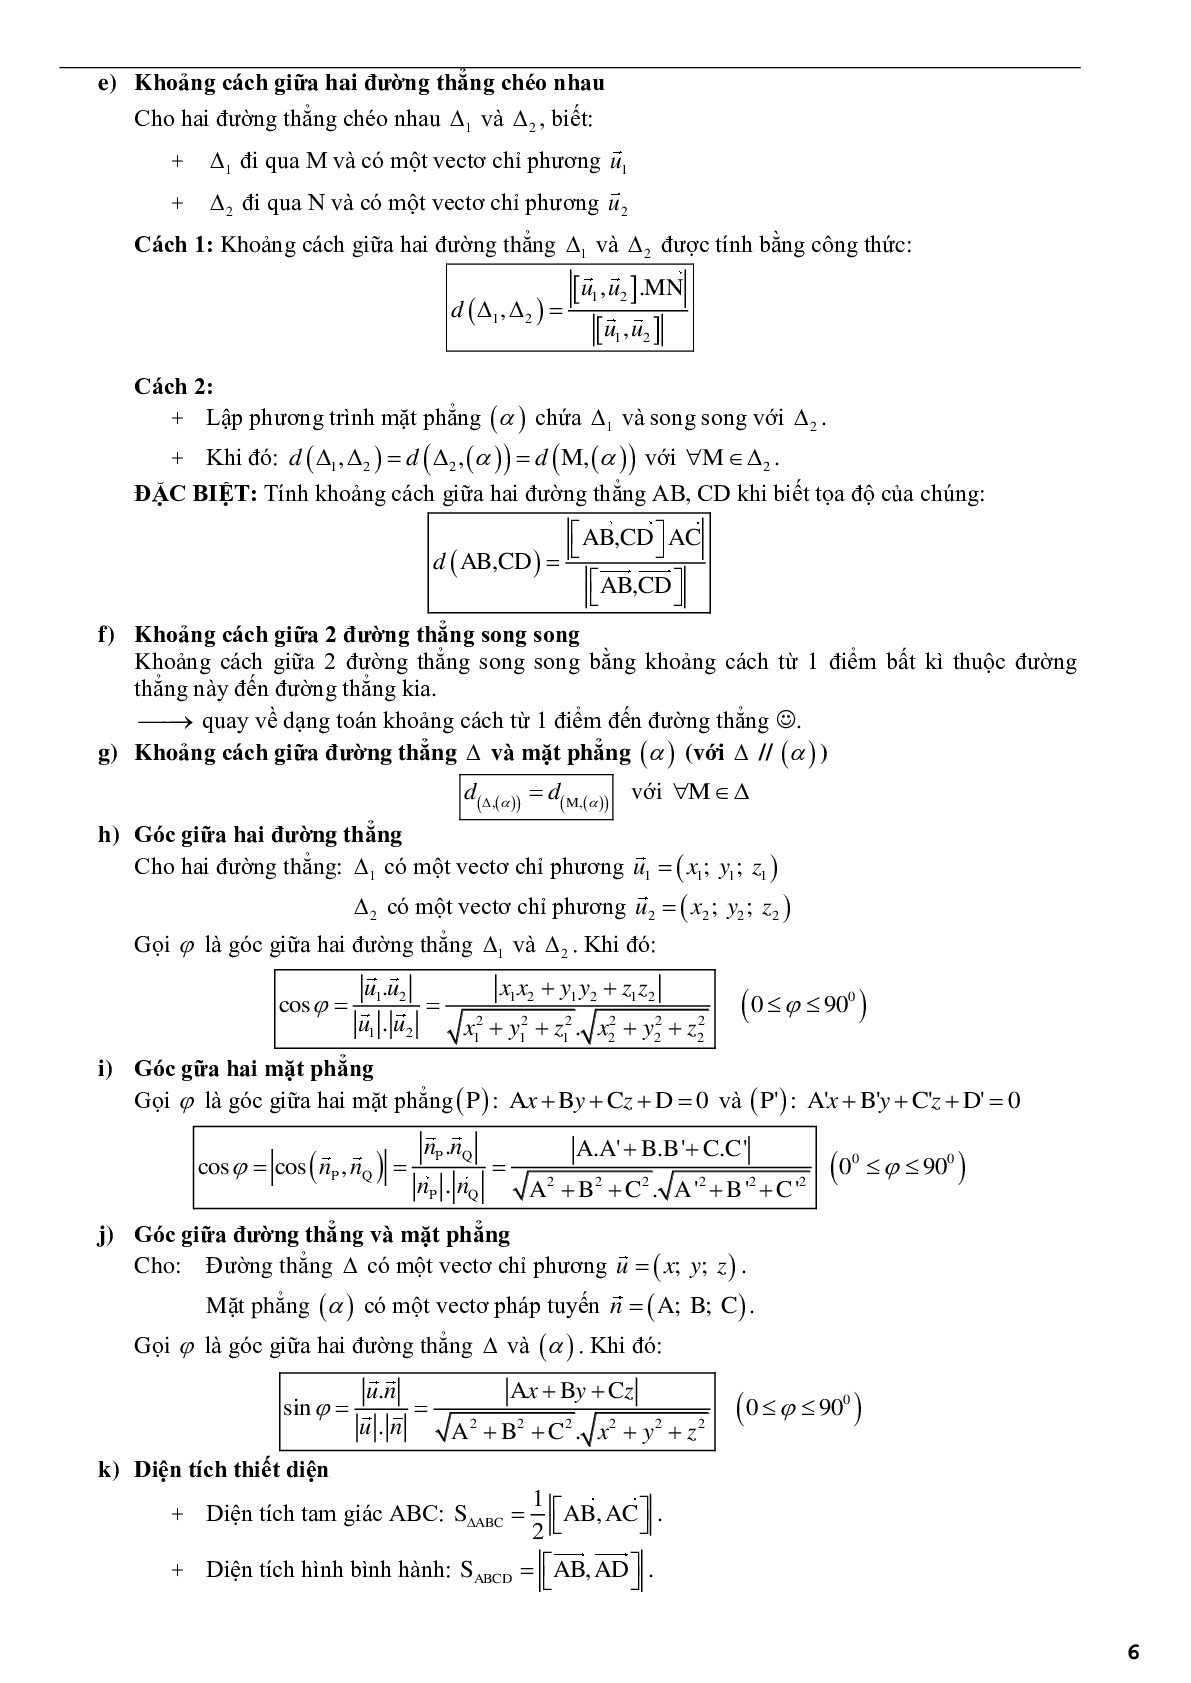 Ứng dụng phương pháp tọa độ để giải bài toán hình học không gian - phần 2 (trang 6)